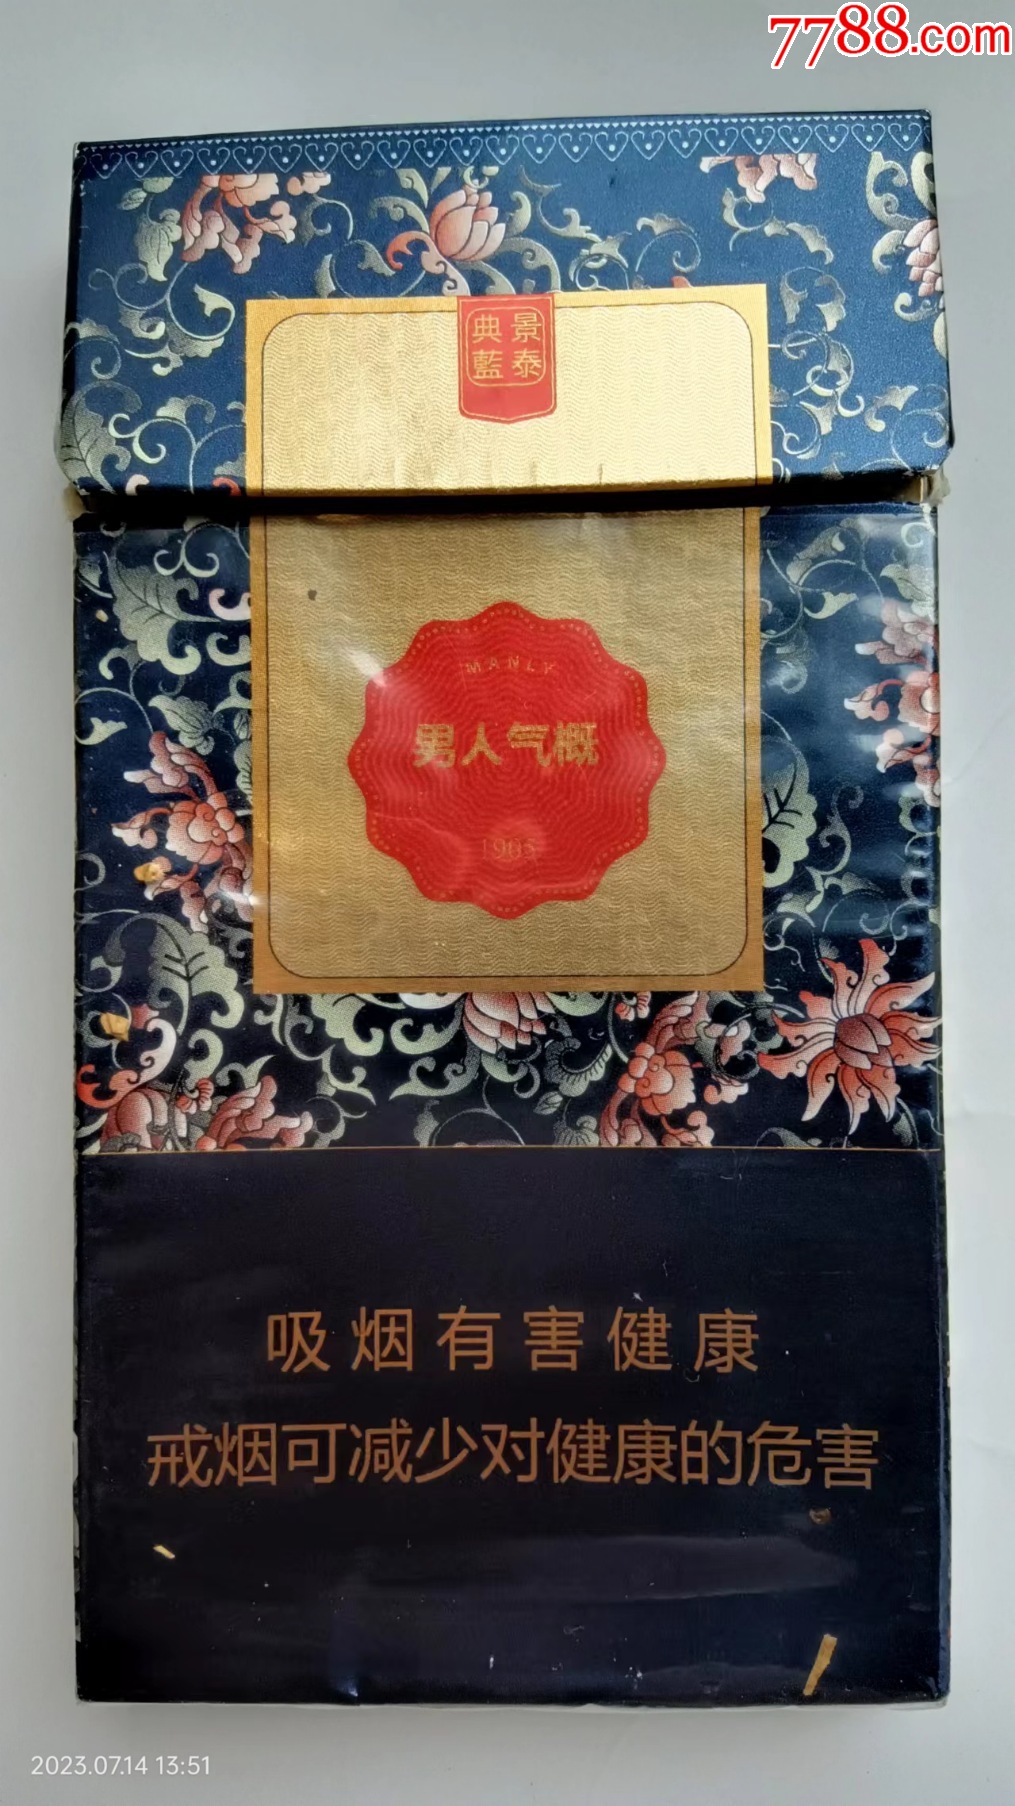 烟标:男人气概·景泰典蓝硬包烟,1905,空盒